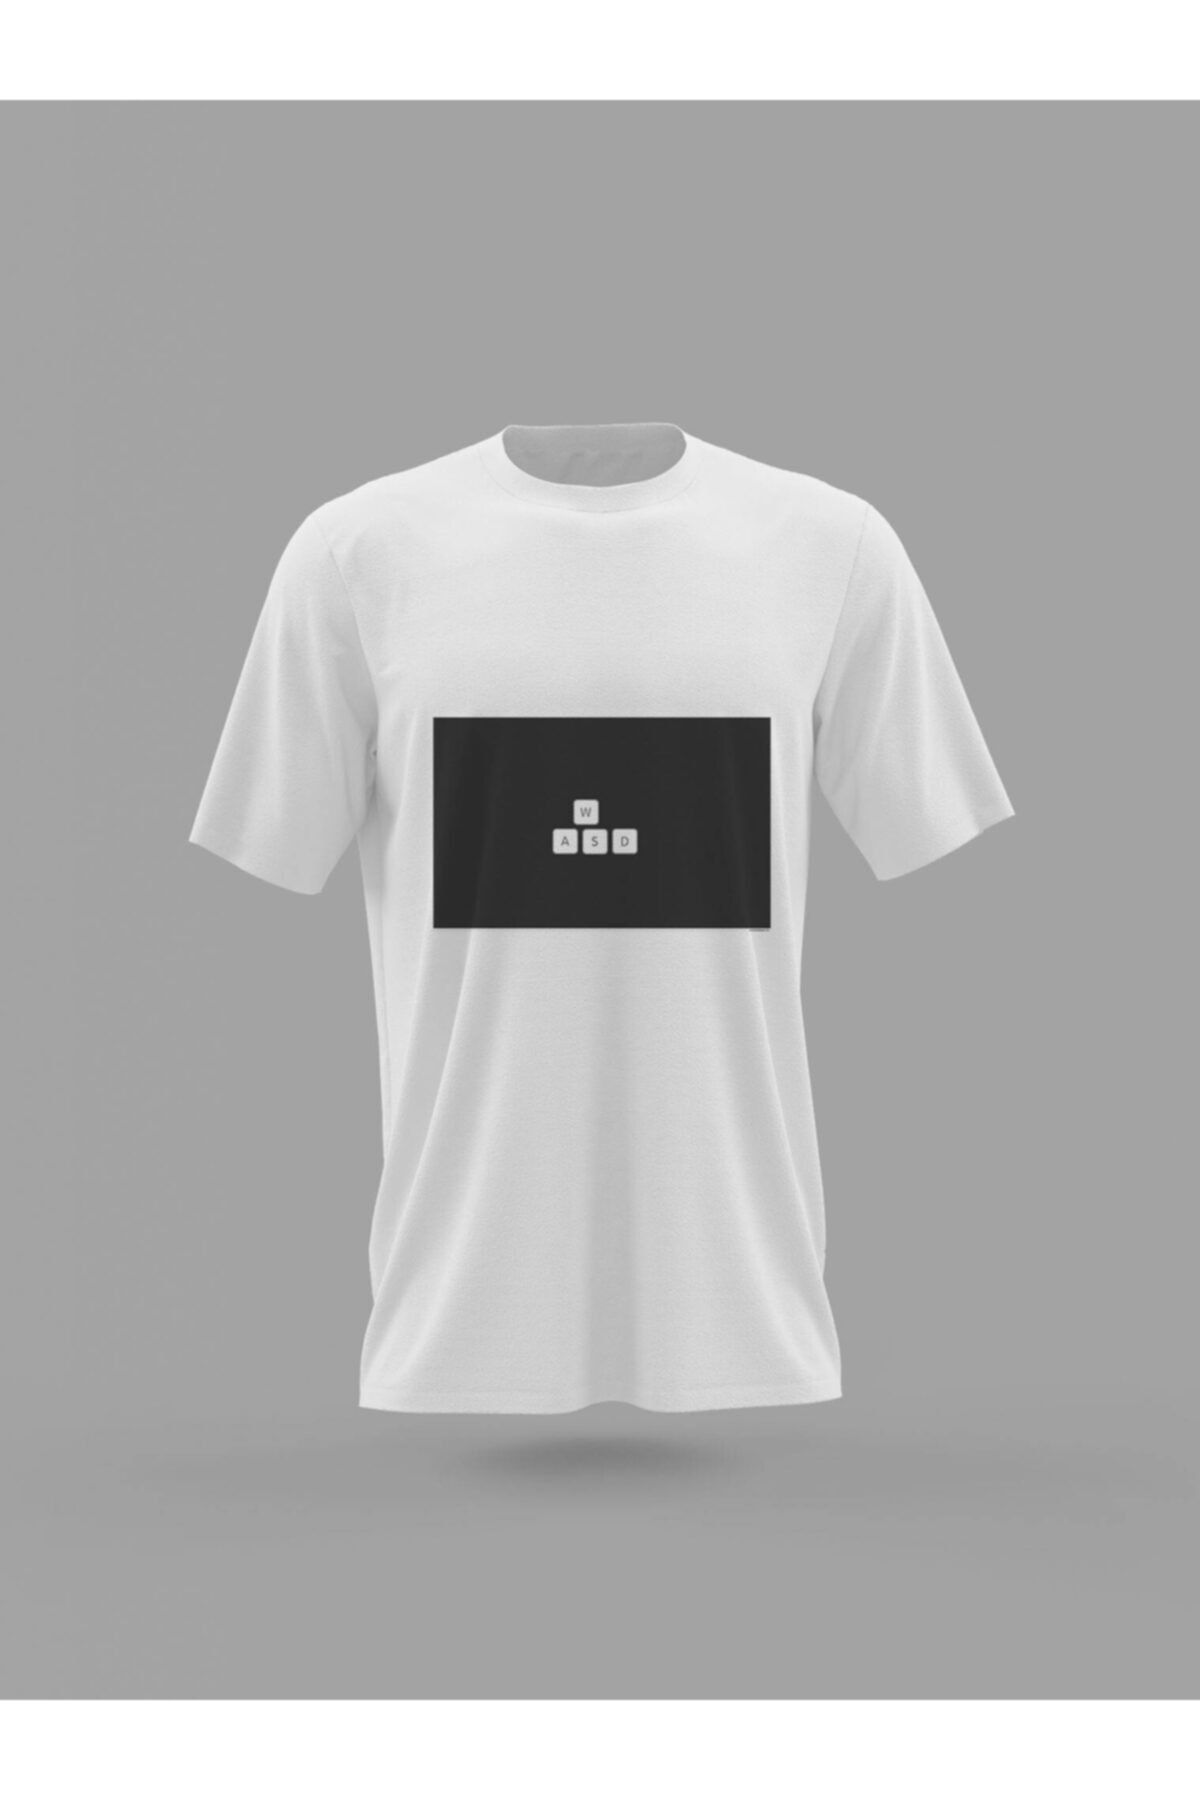 Panorama Ajans Oyunculara Özel Wasd Tuş Klavye Baskılı T-shirt